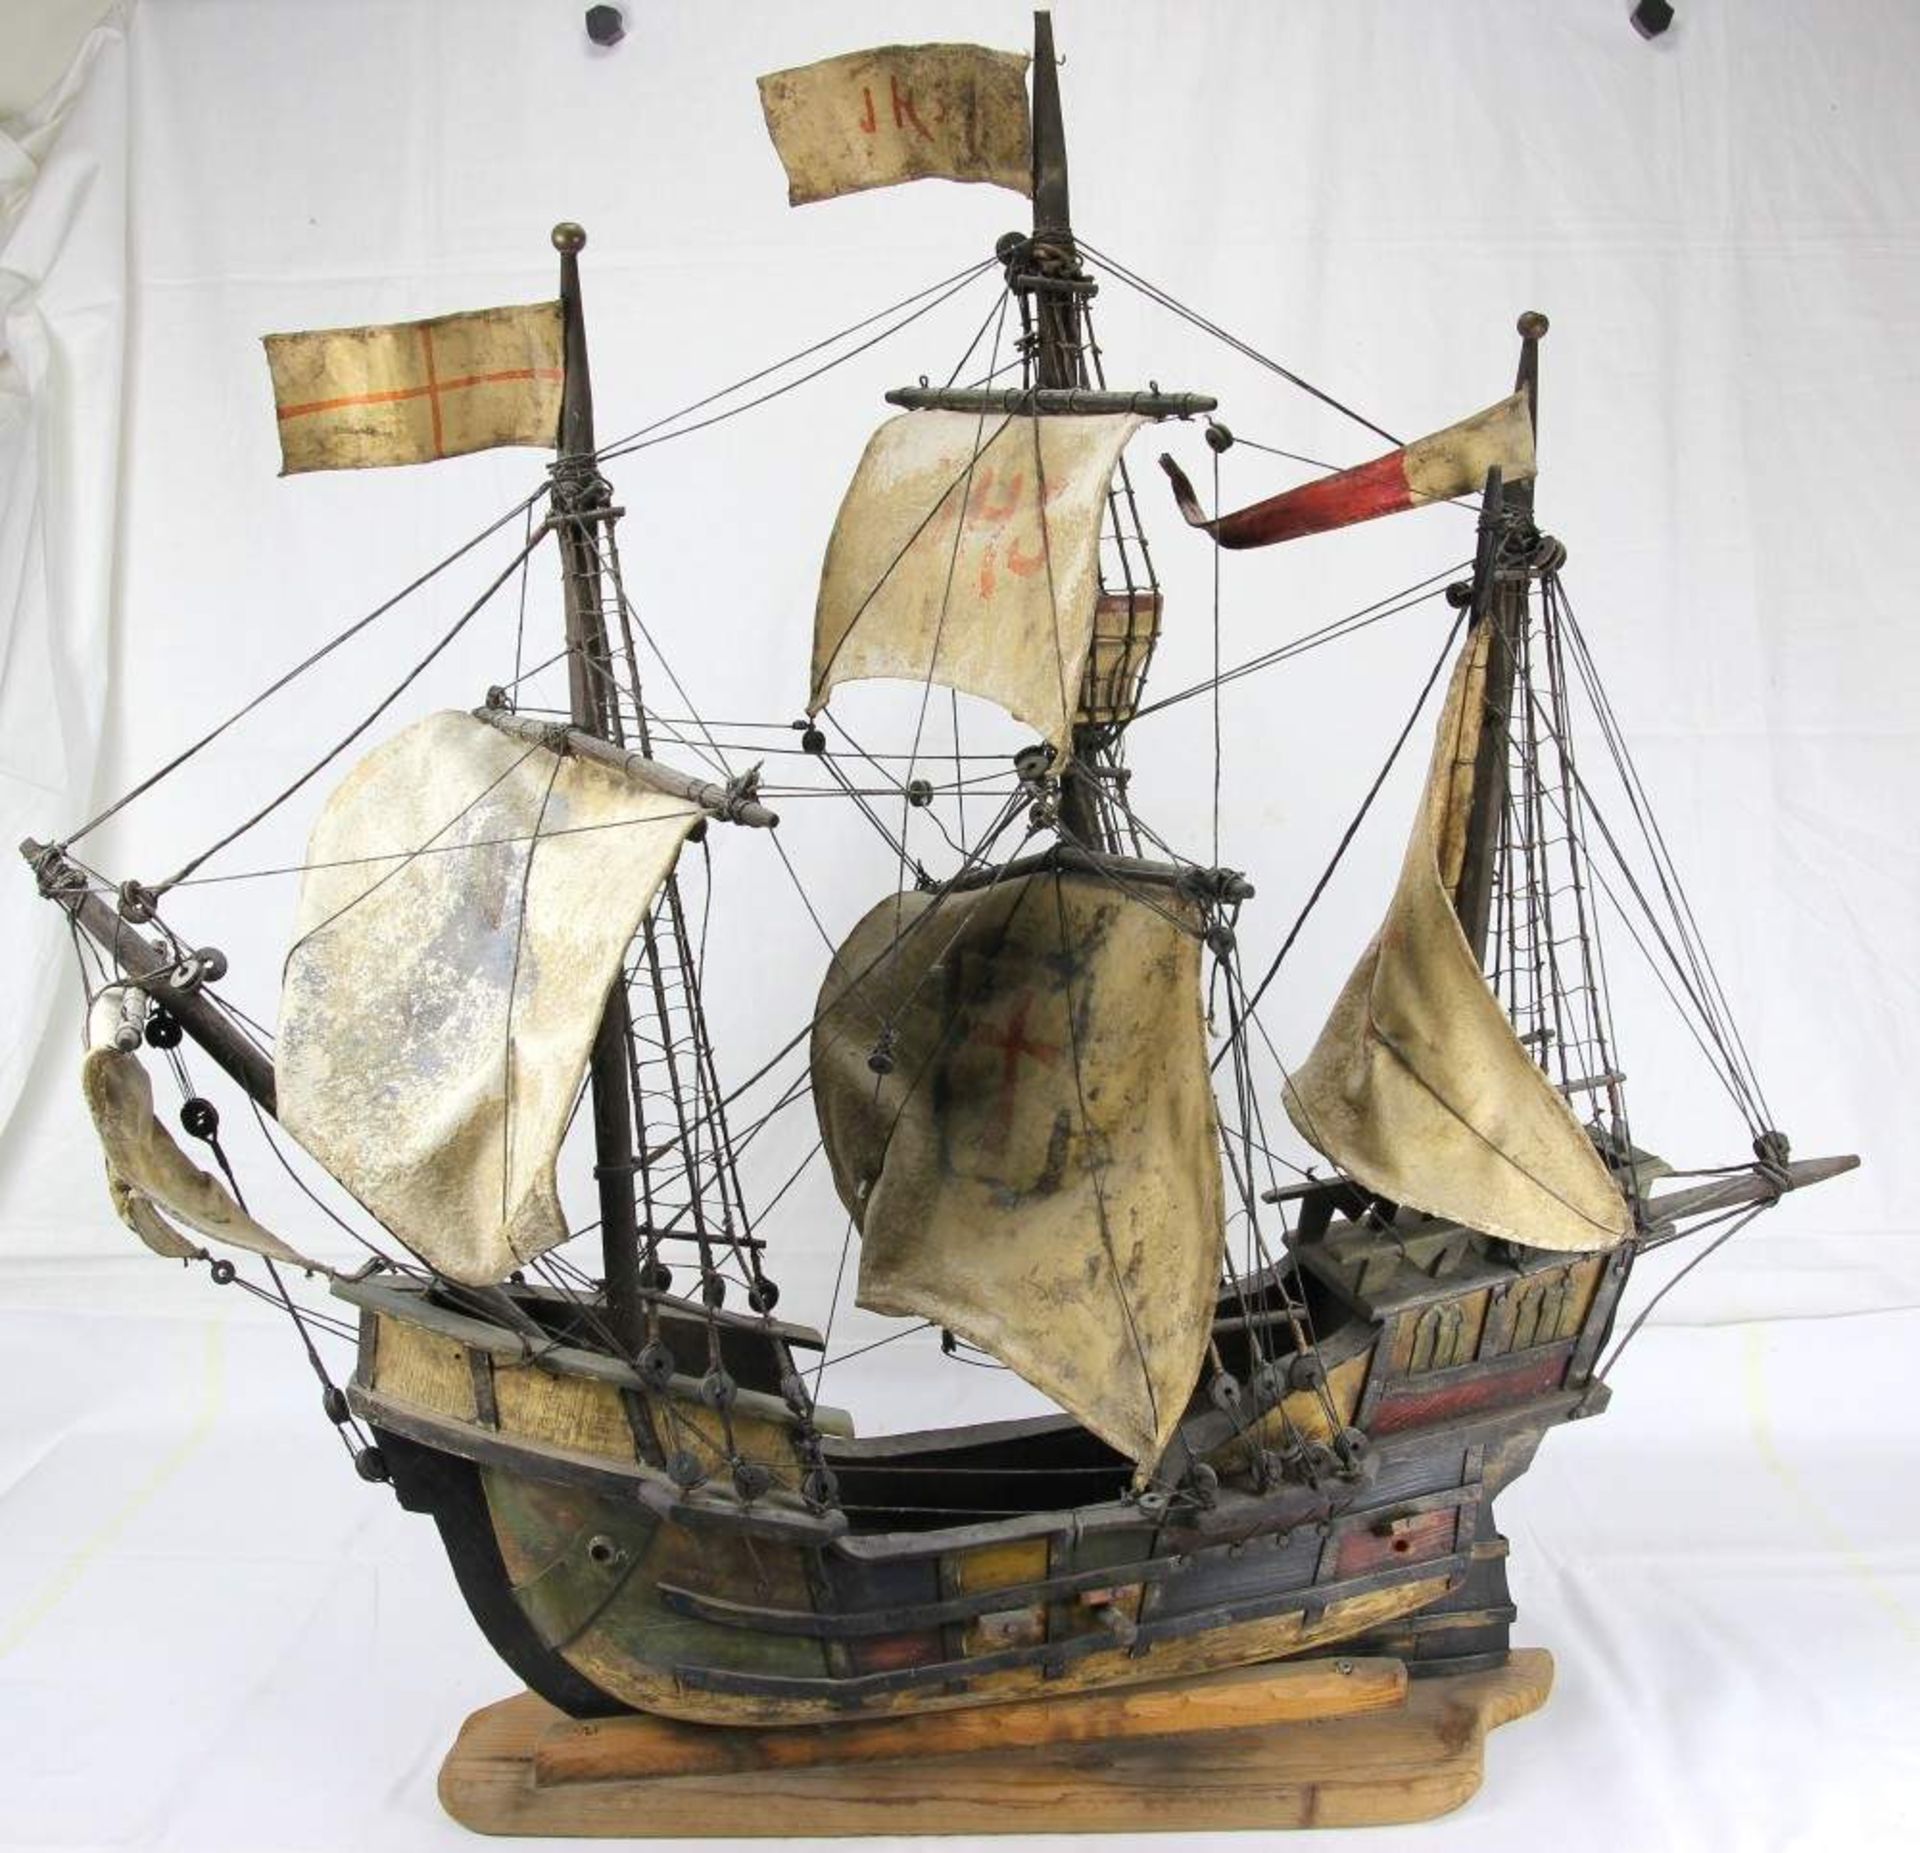 Segelschiffmodell wohl Santa Maria Dt. 20. Jh. Fein gearbeitetes Holzmodell mit Ledersegeln, teils